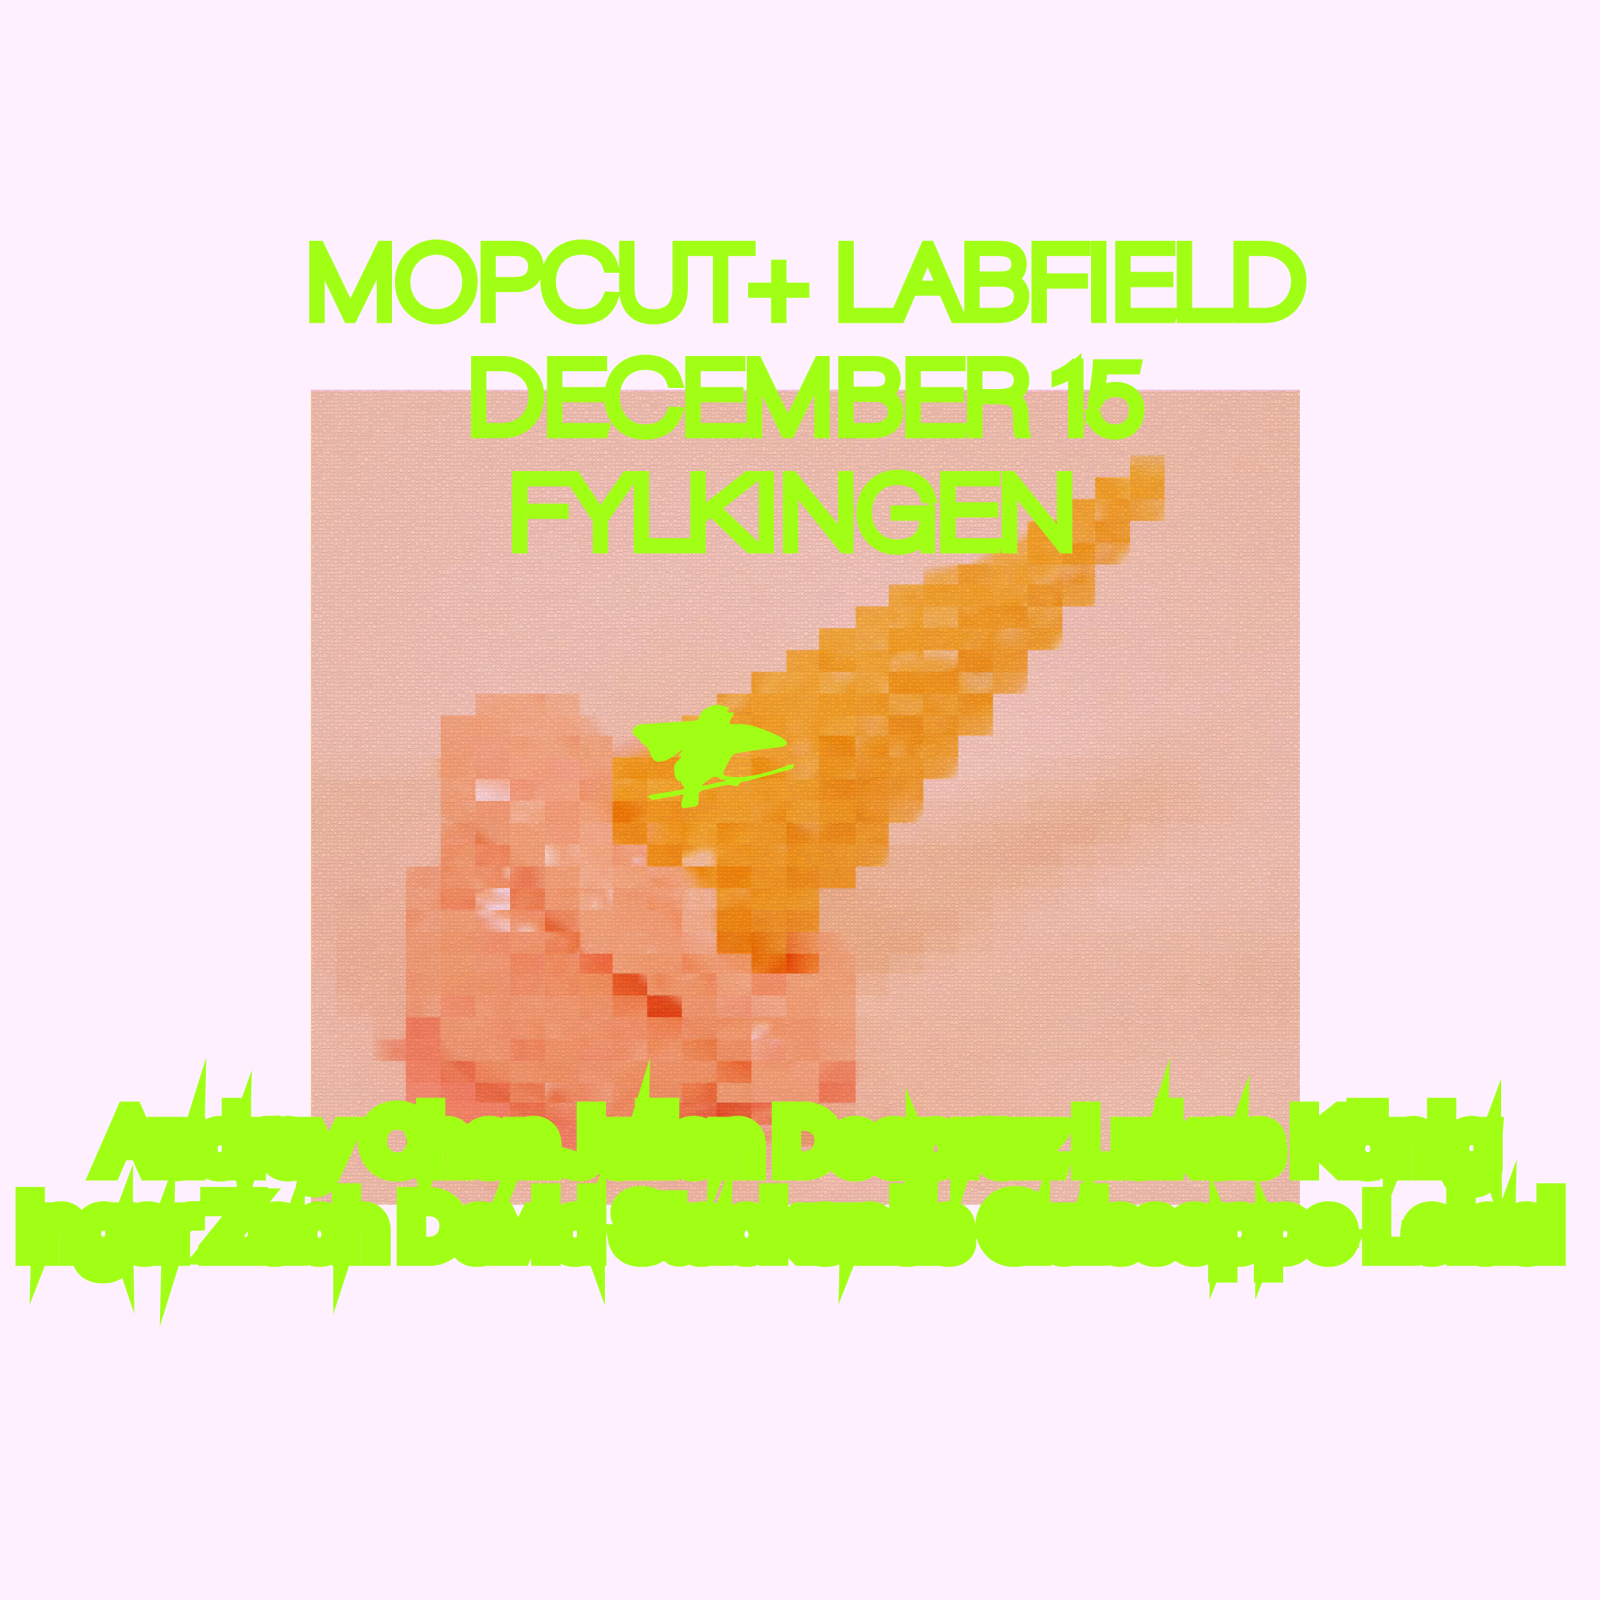 mopcut+labfield